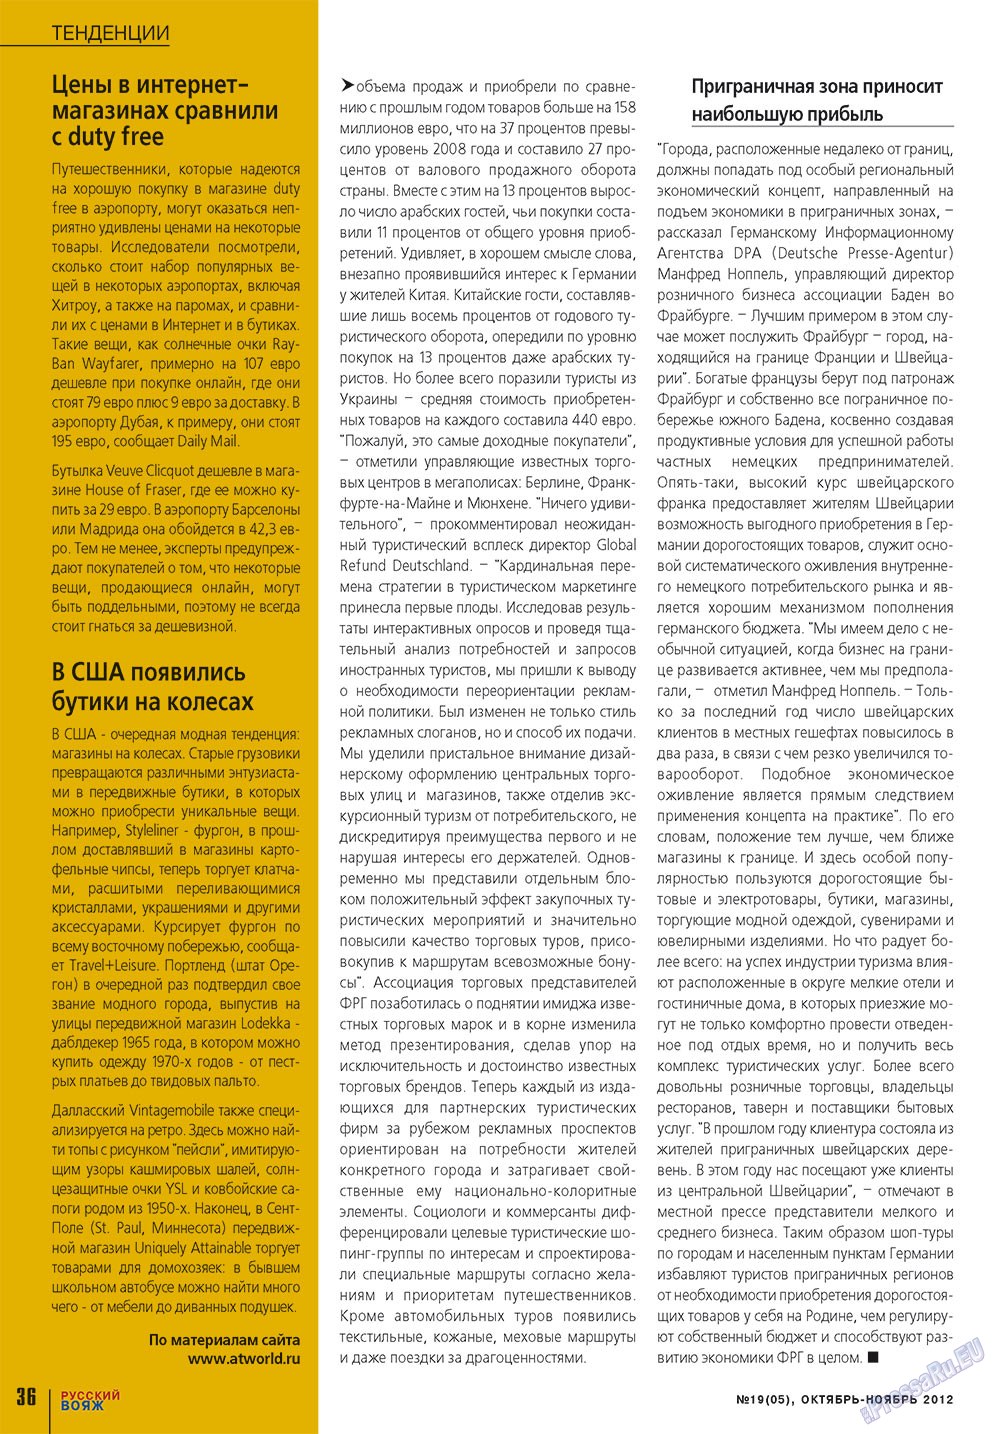 Русский вояж, журнал. 2012 №19 стр.36